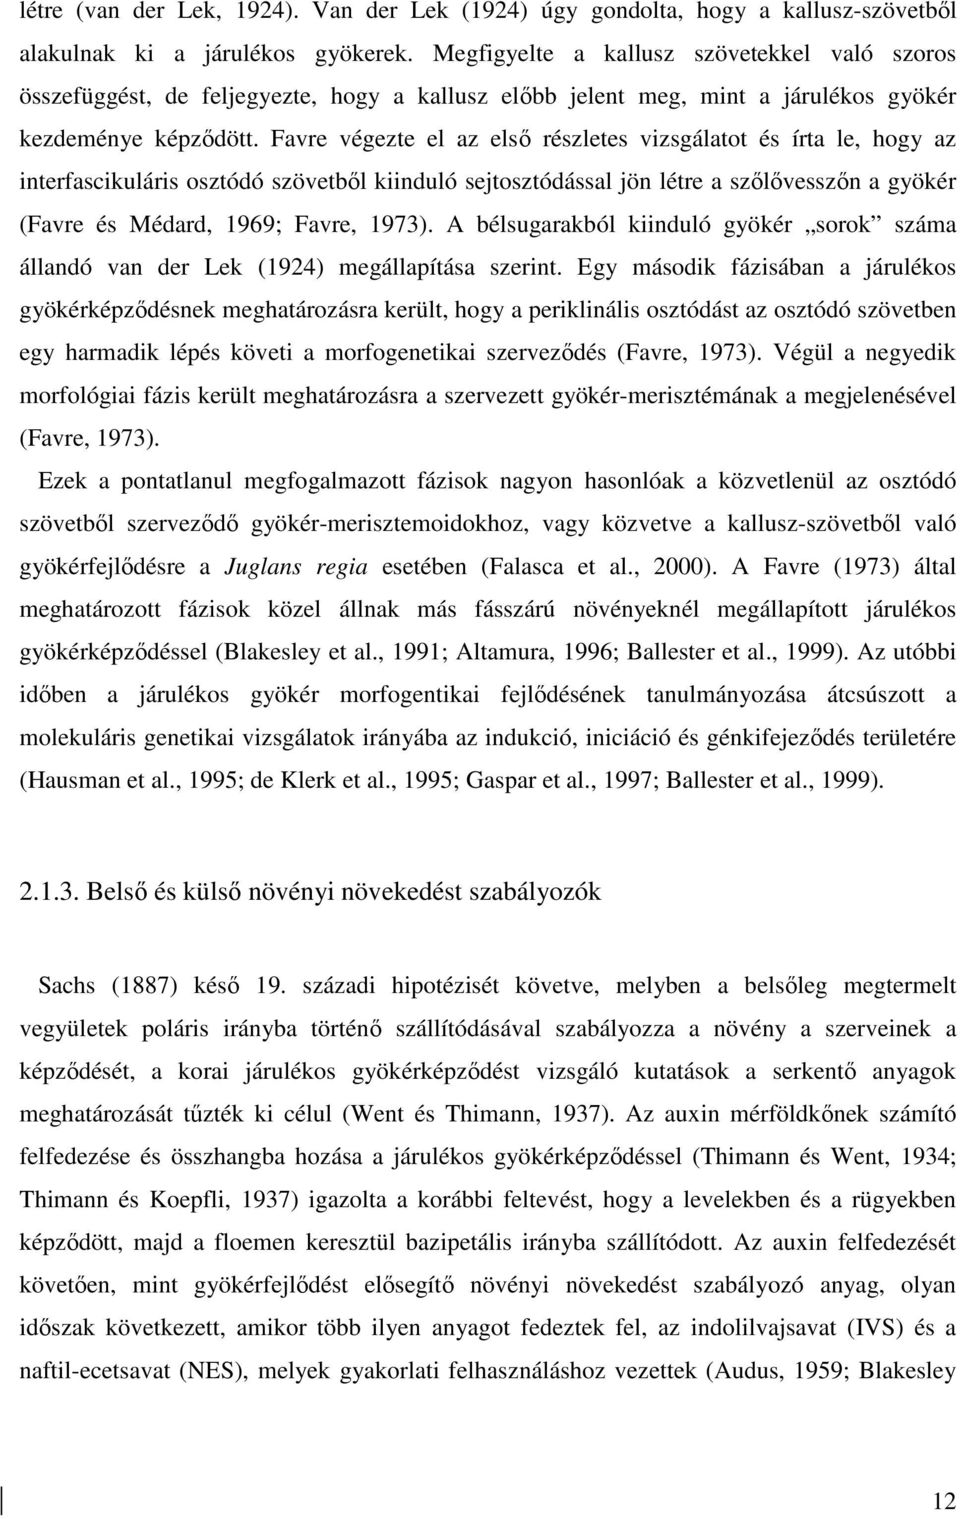 Favre végezte el az elsı részletes vizsgálatot és írta le, hogy az interfascikuláris osztódó szövetbıl kiinduló sejtosztódással jön létre a szılıvesszın a gyökér (Favre és Médard, 1969; Favre, 1973).